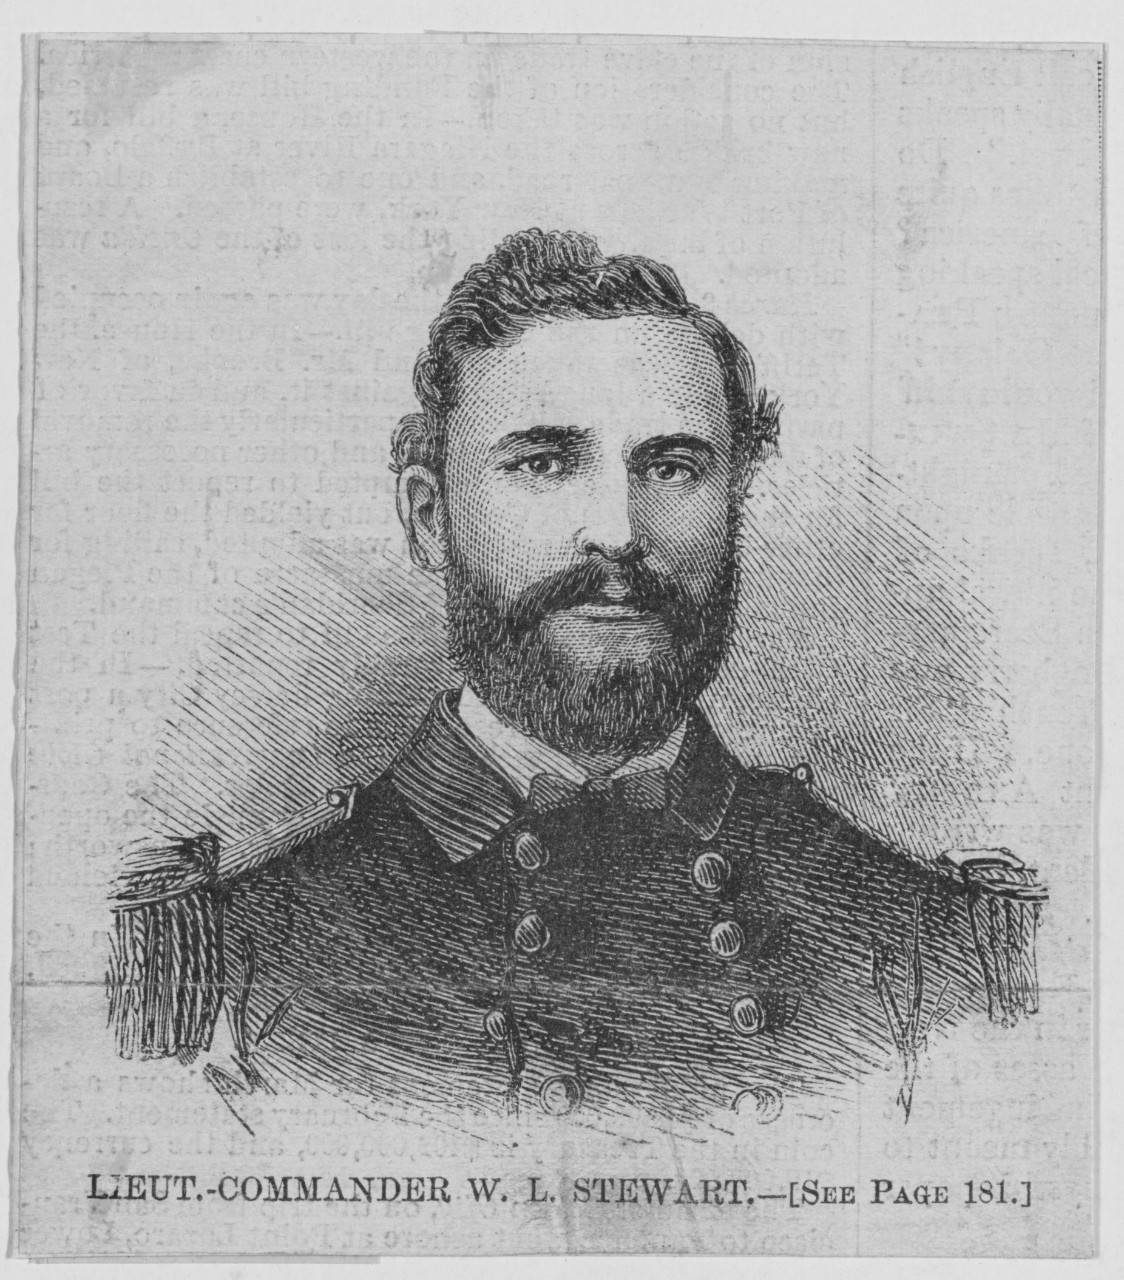 Lieutenant Commander William F. Stewart USN